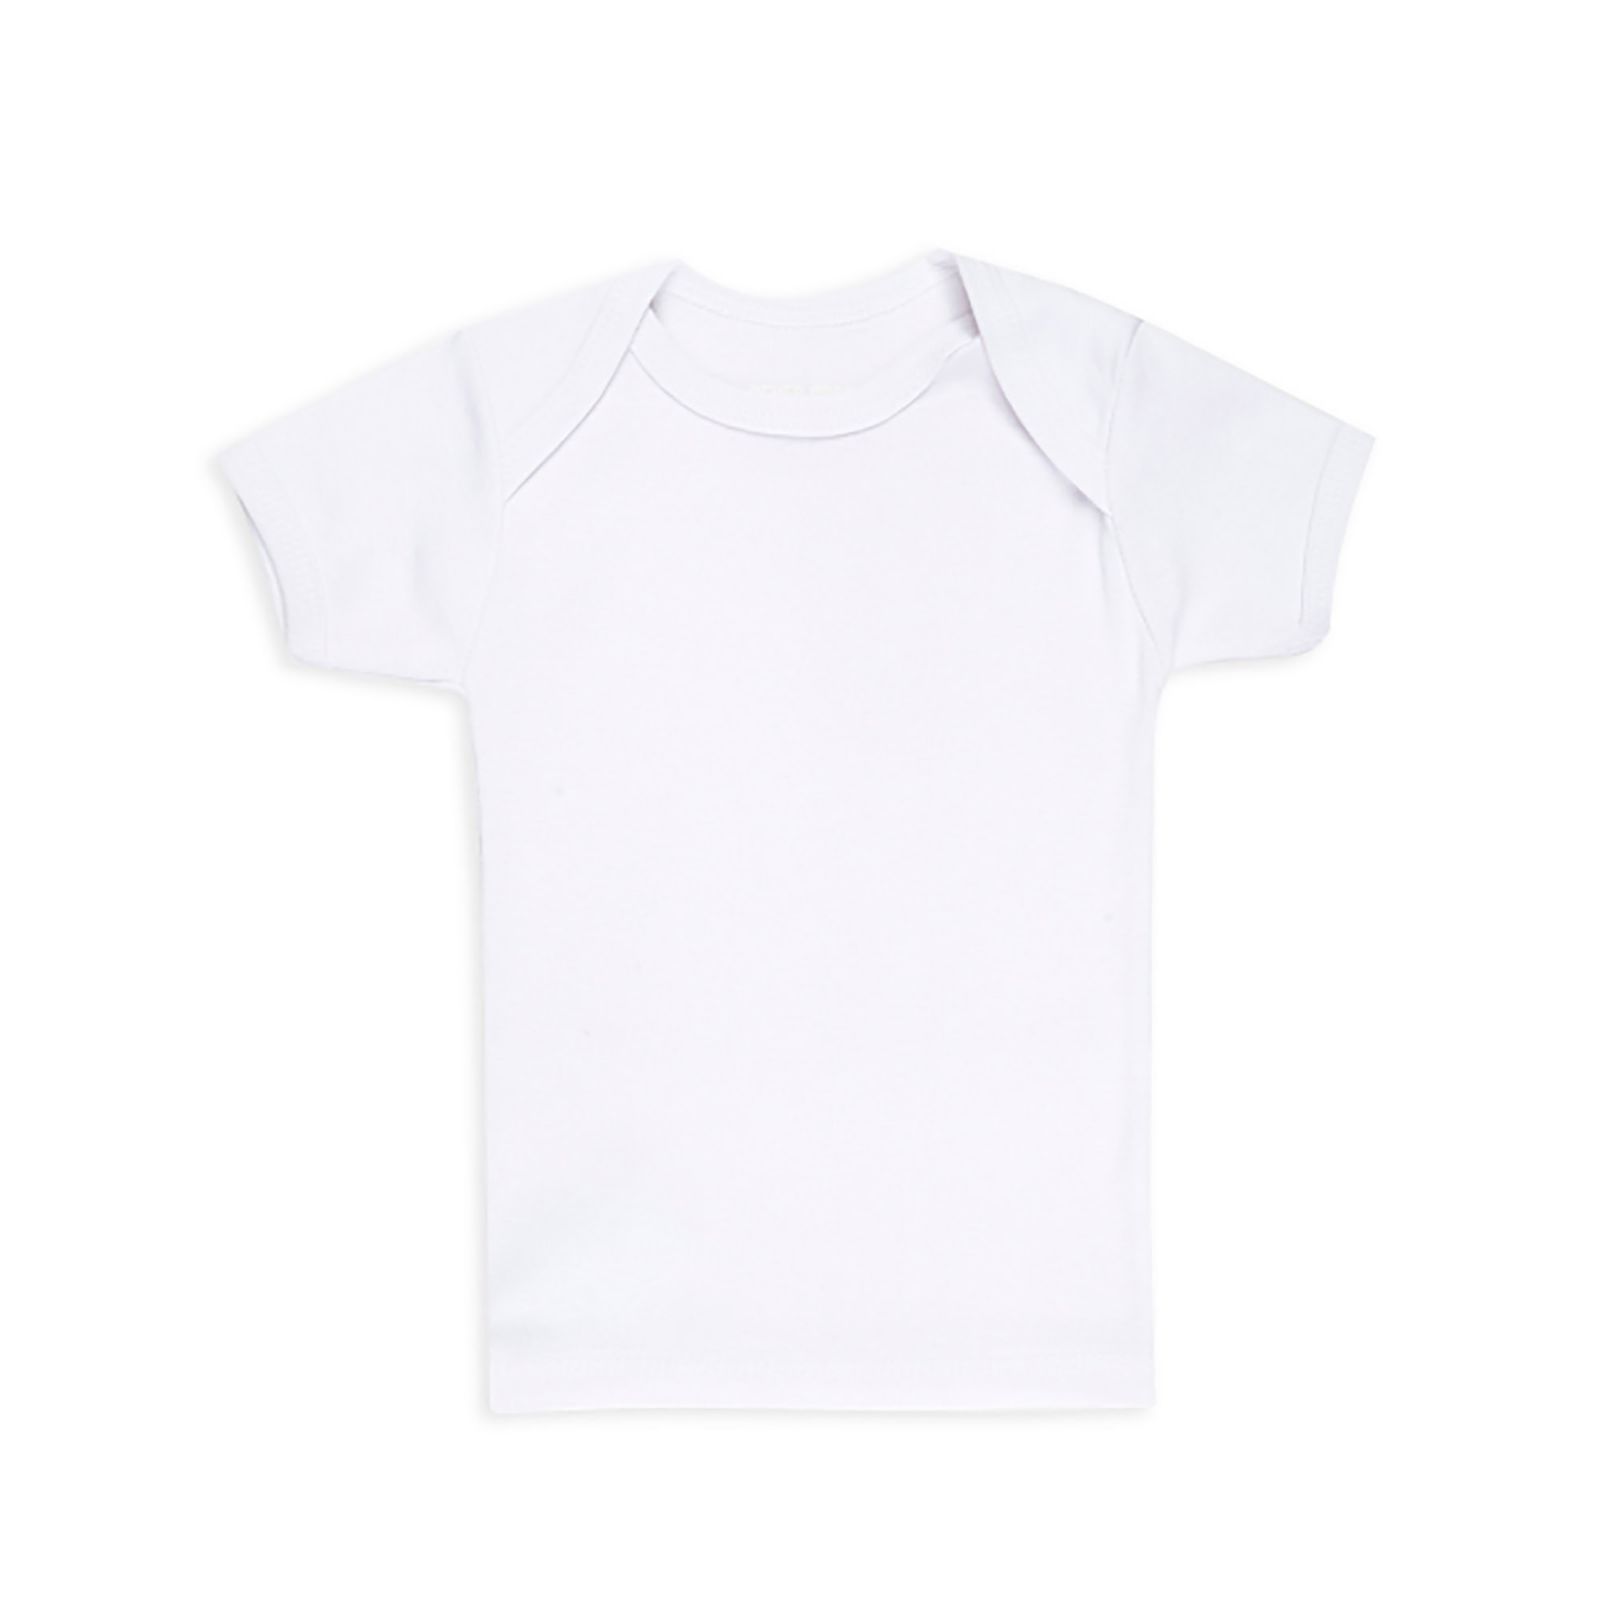 تی شرت آستین کوتاه نوزادی سون پون مدل BC109